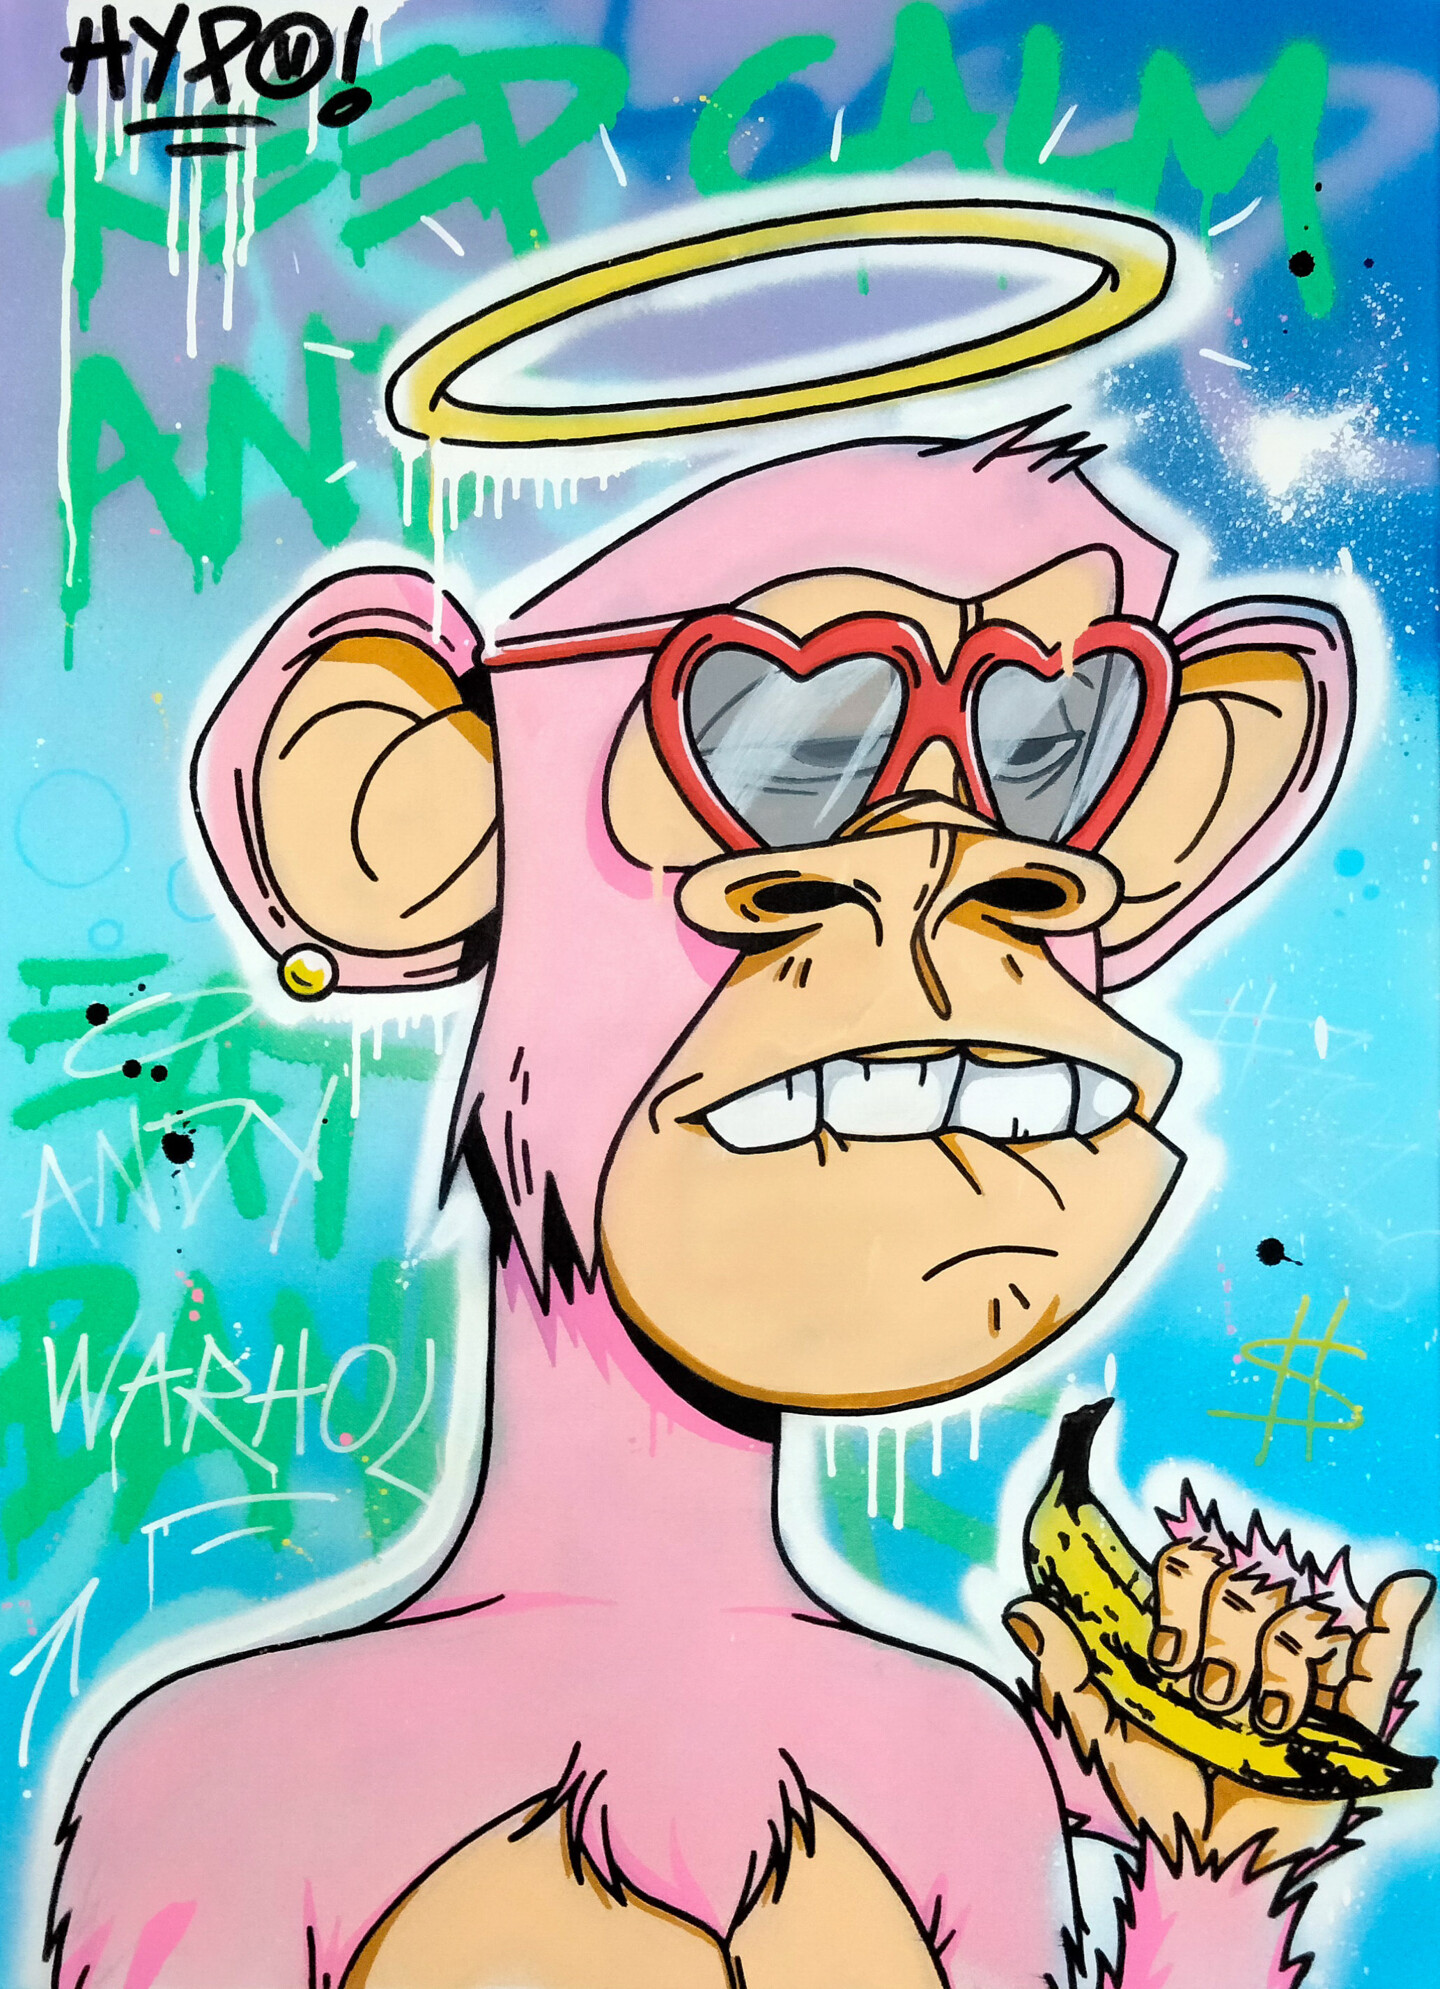 Bored Ape Yatch Club x Andy Warhol